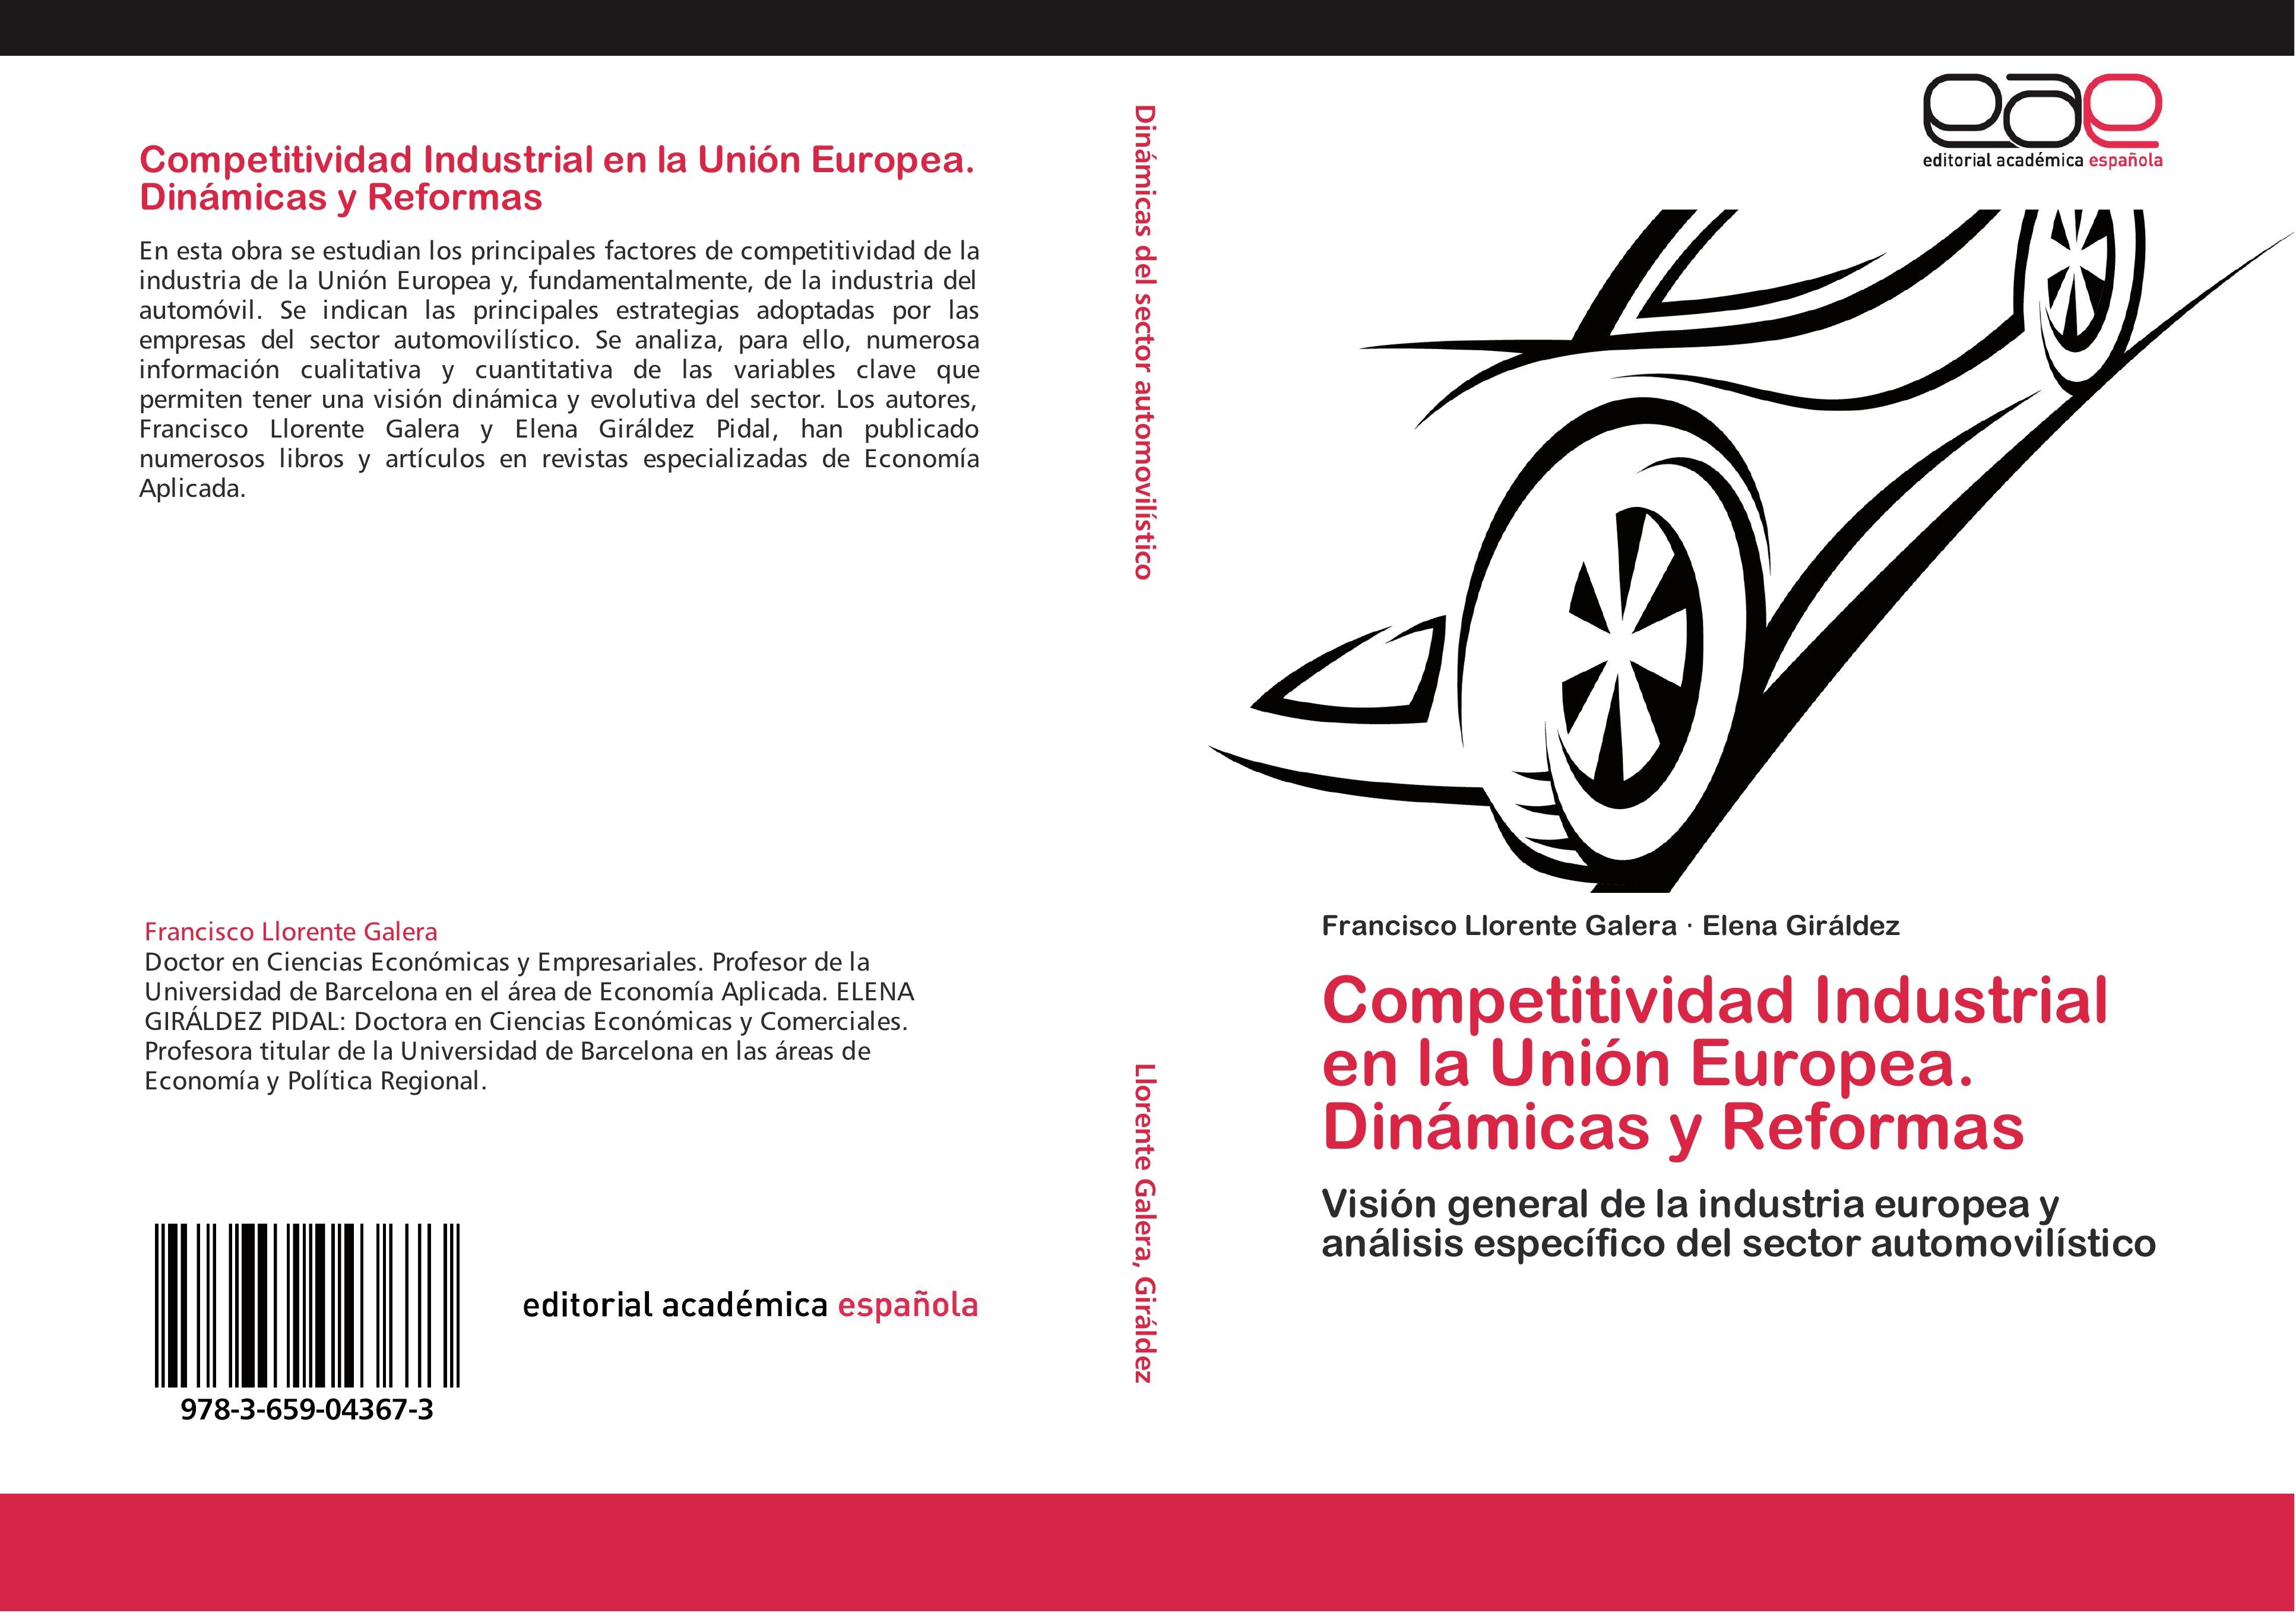 Competitividad Industrial en la Unión Europea. Dinámicas y Reformas - Francisco Llorente Galera Elena Giráldez